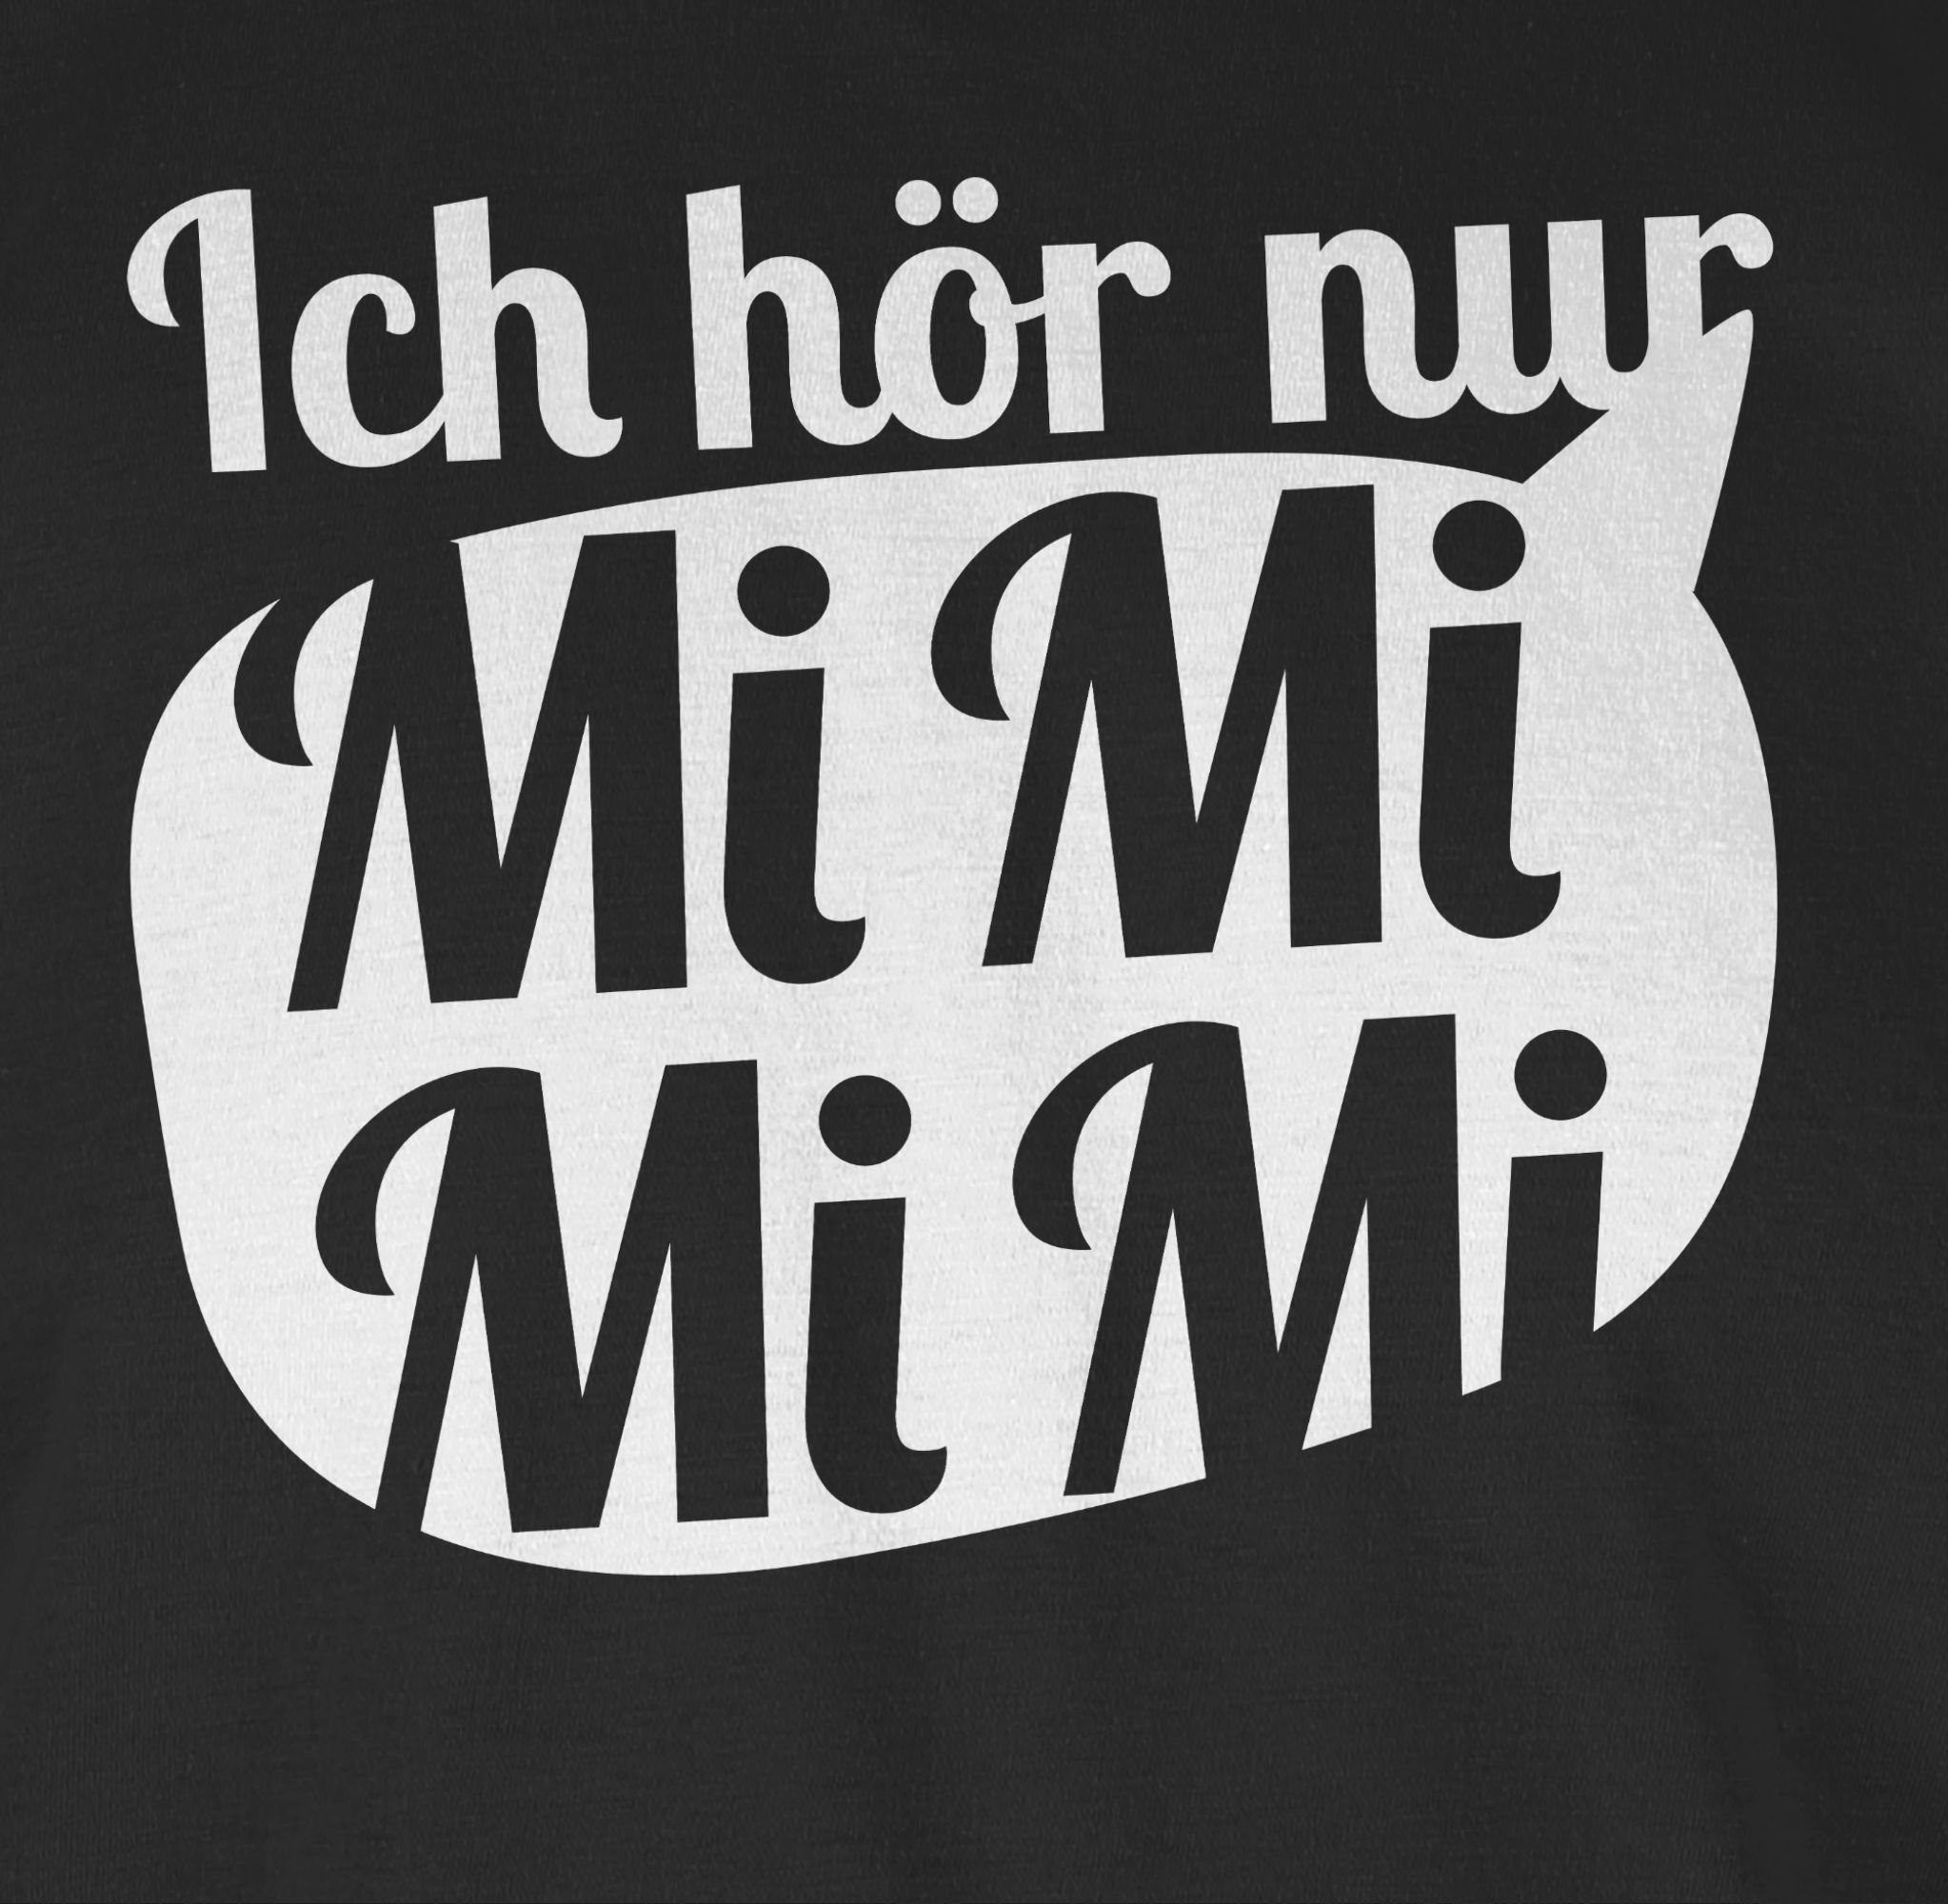 Sprechblase mit - MIMIMI hör Spruch mit 1 Shirtracer Statement Schwarz weiß nur T-Shirt Ich Sprüche